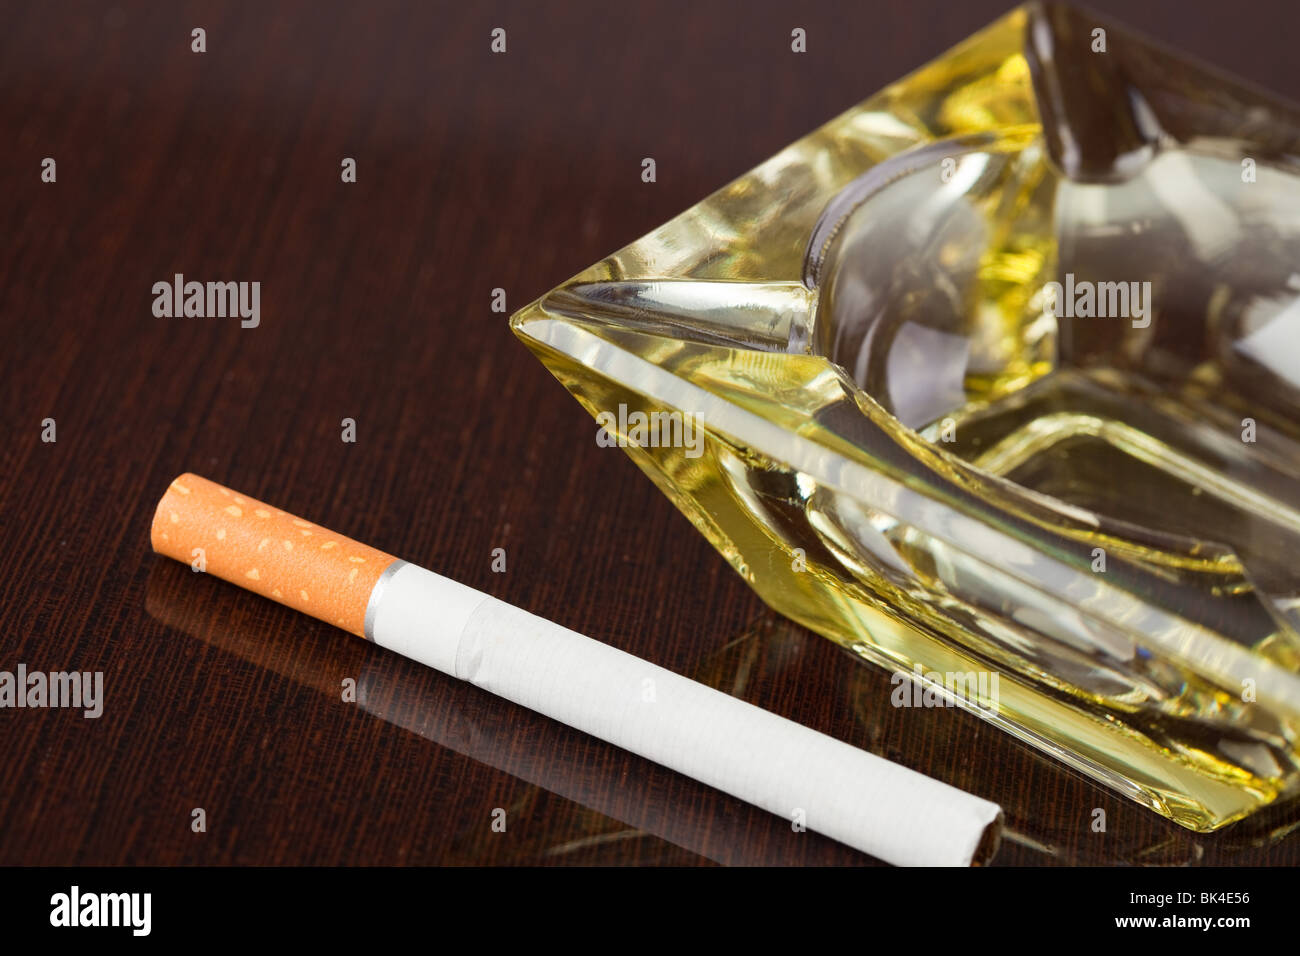 cigarette and ashtray Stock Photo